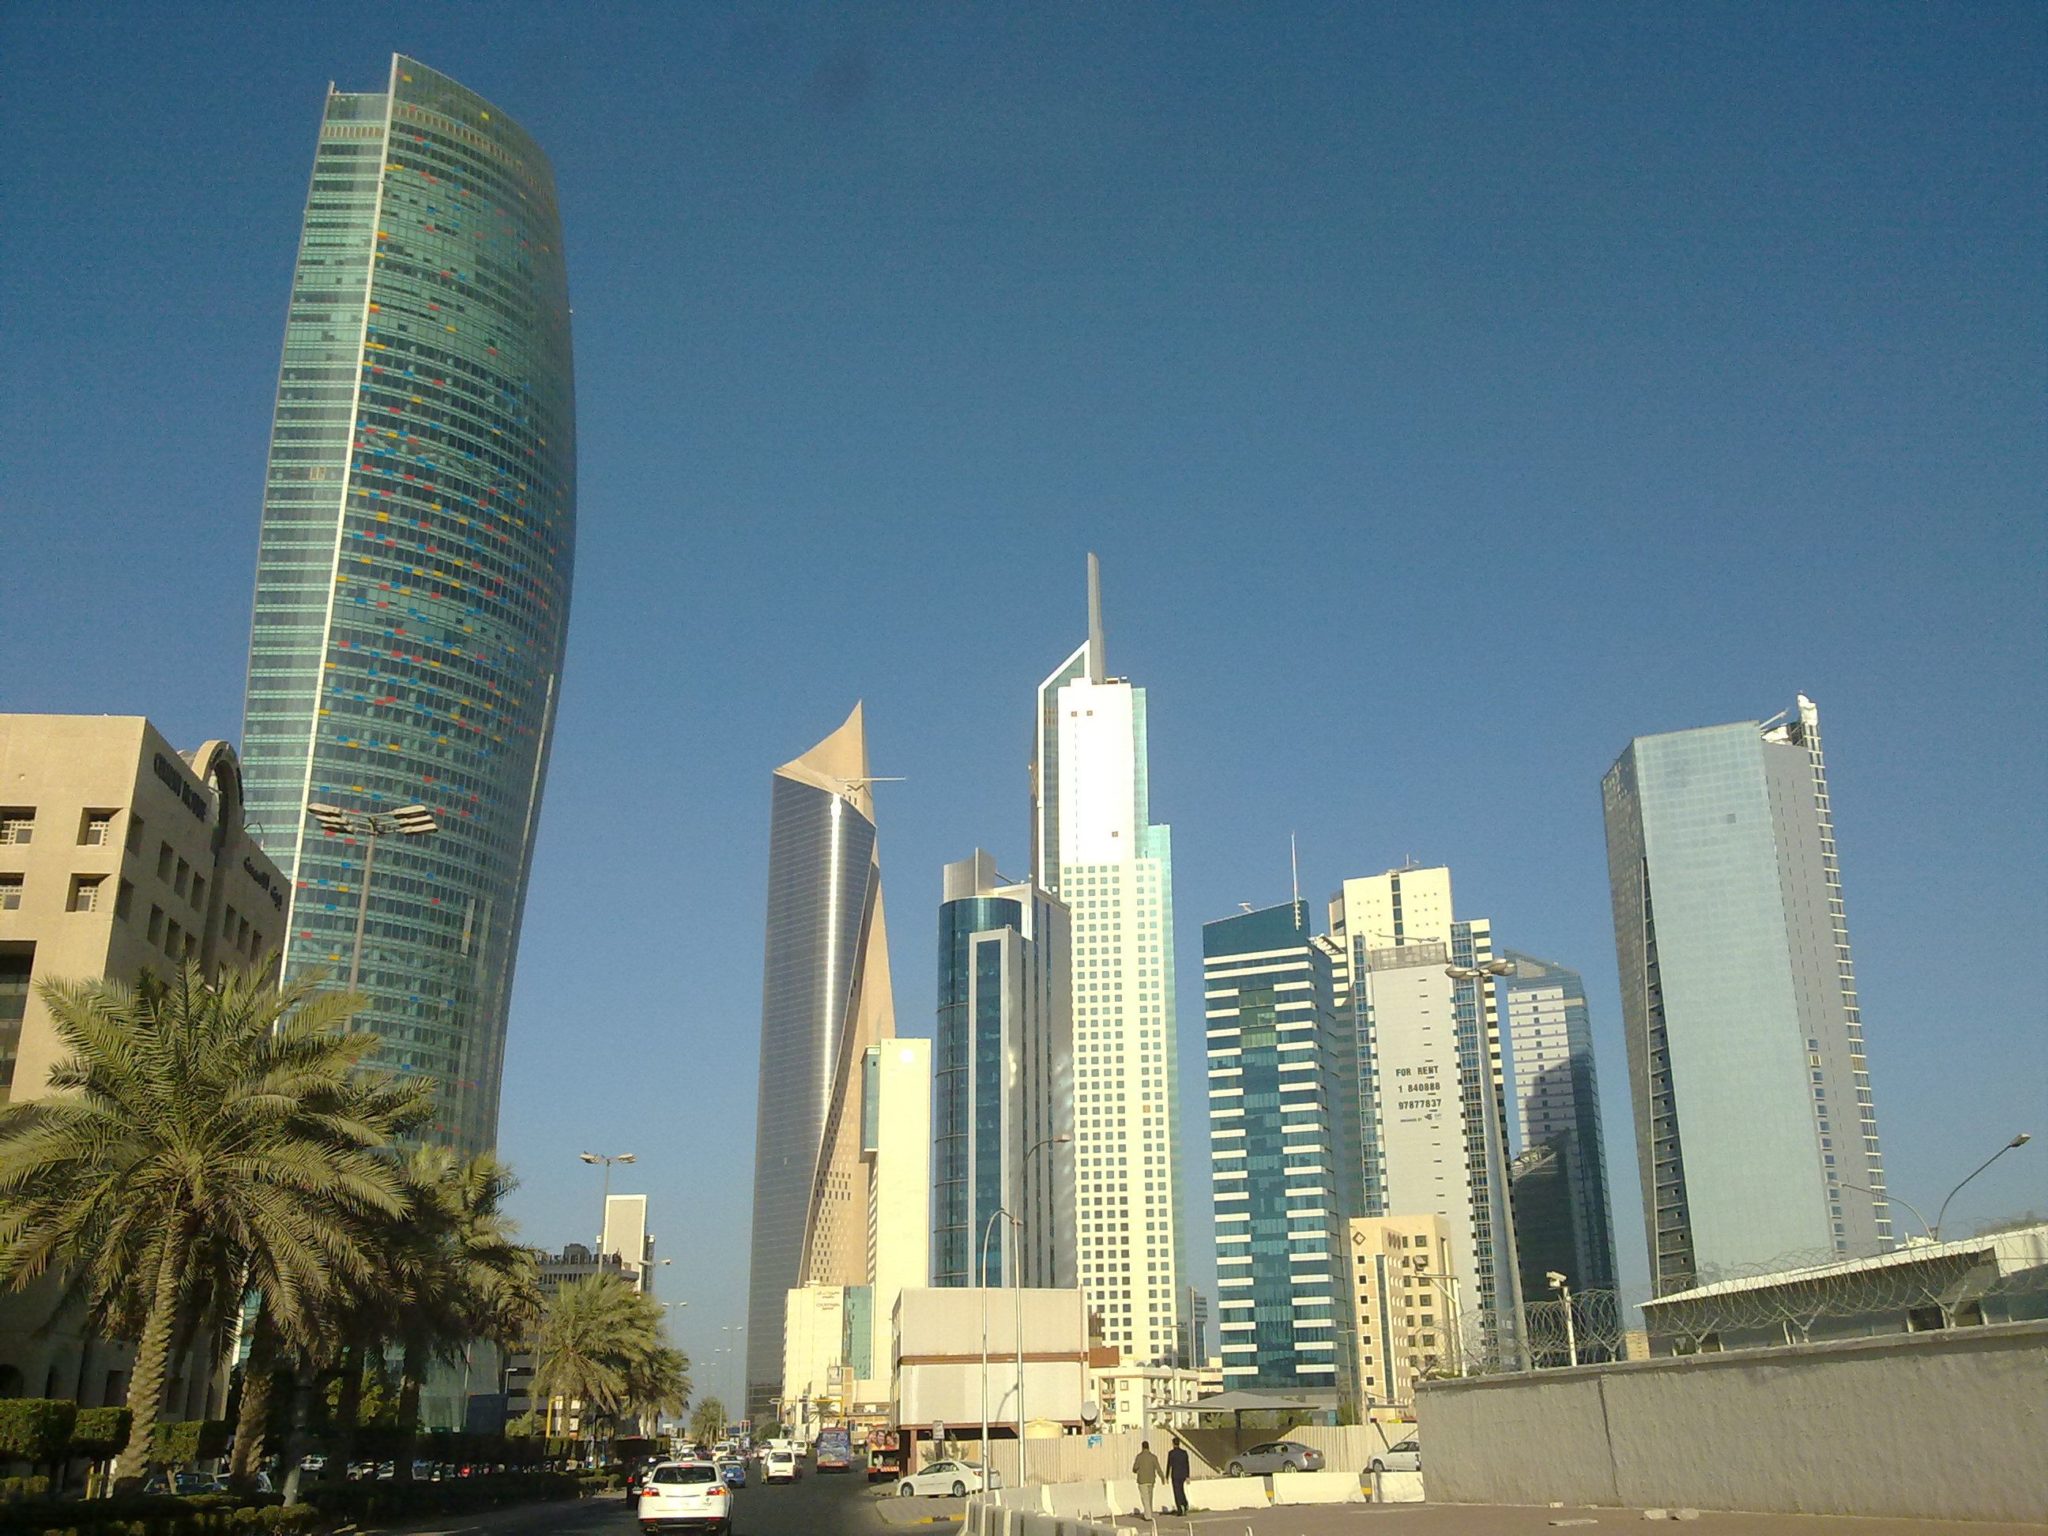 الملايين من الأموال الكويتية المفقودة تثير المخاوف في آسيا أكواتيكس